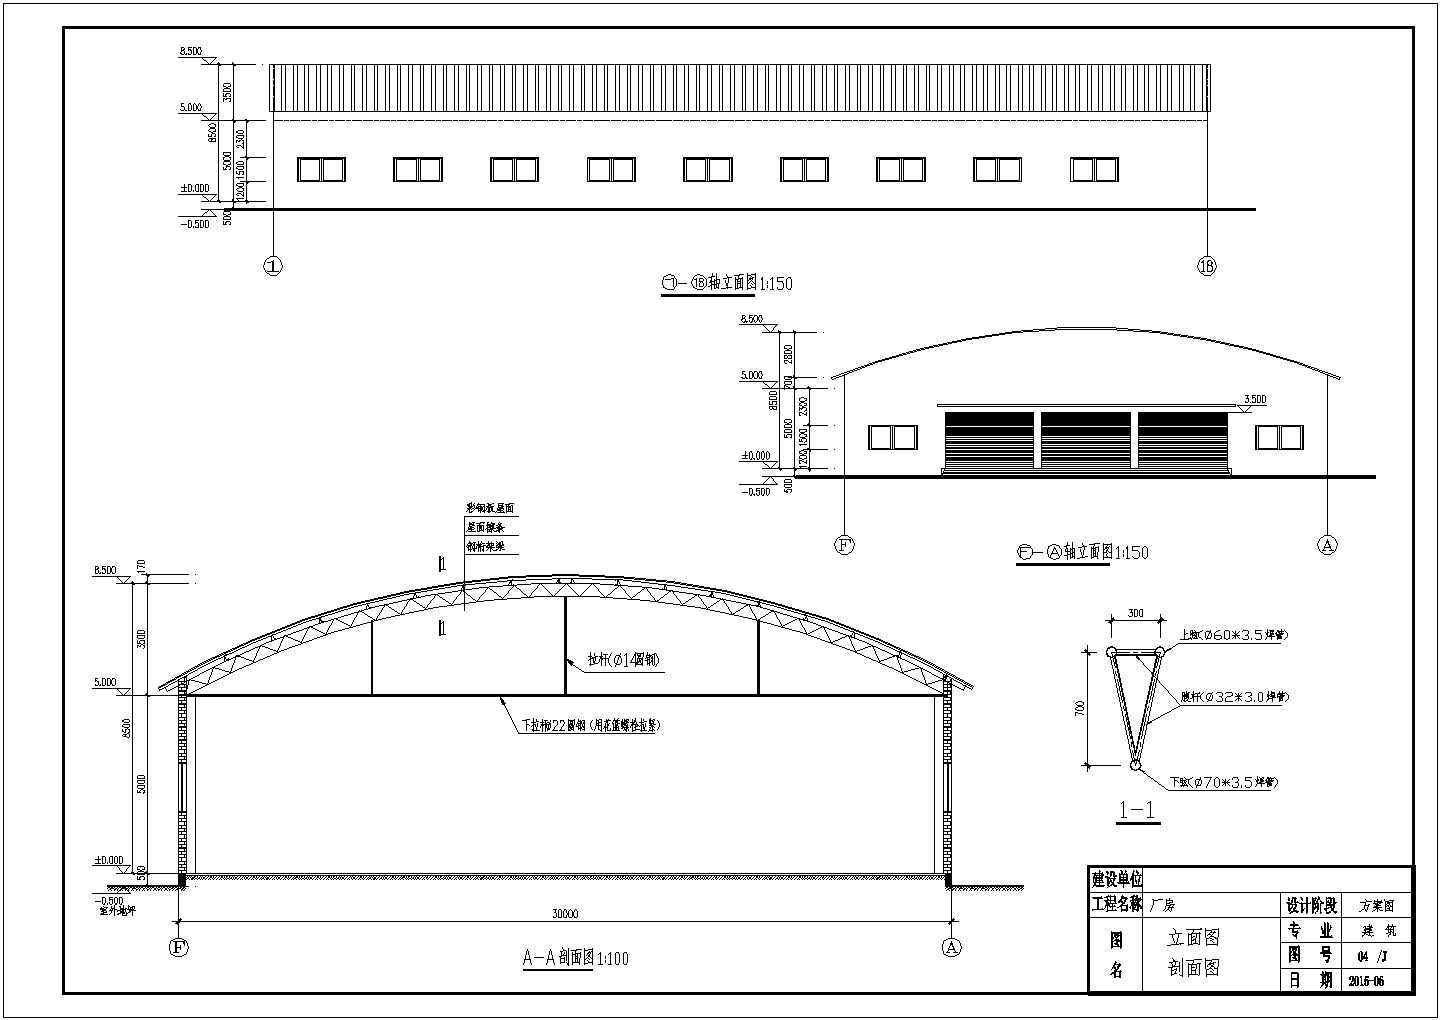 30米跨拱形桁架排架结构厂房施工图